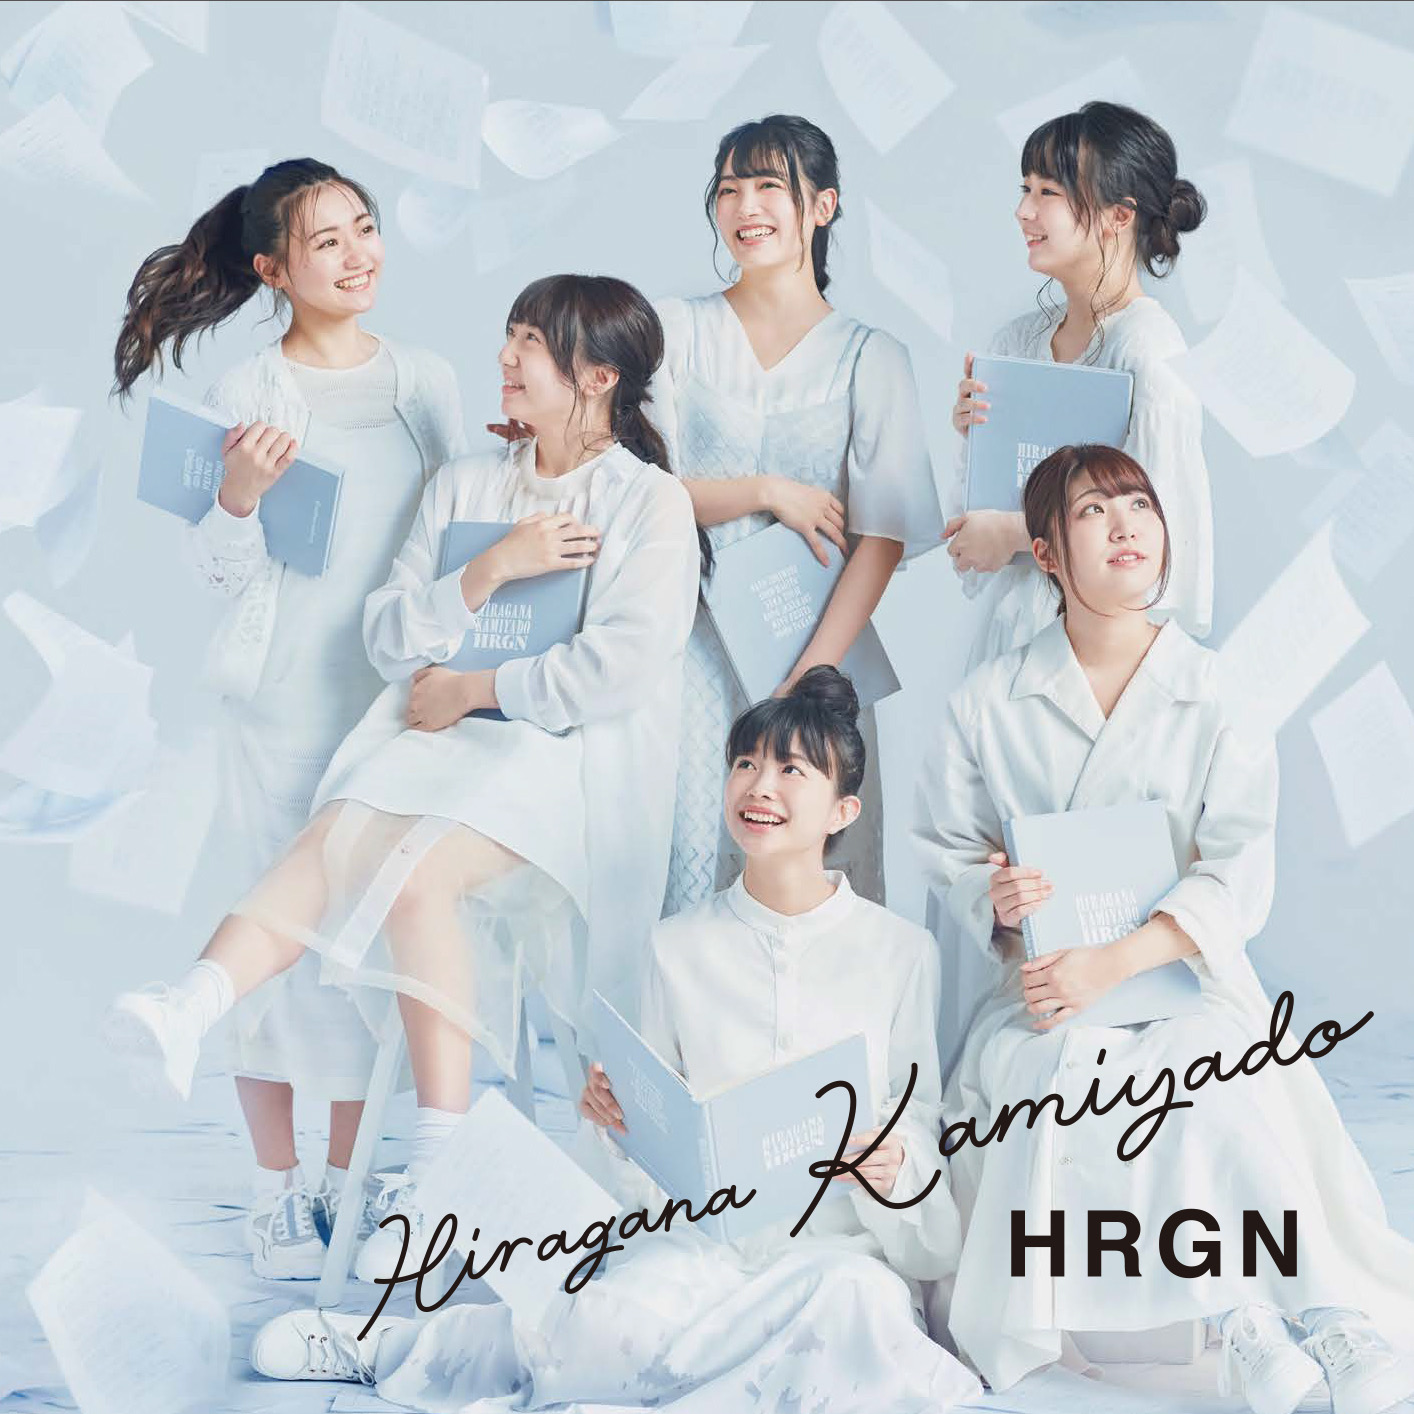 かみやど1stアルバム『HRGN』発売